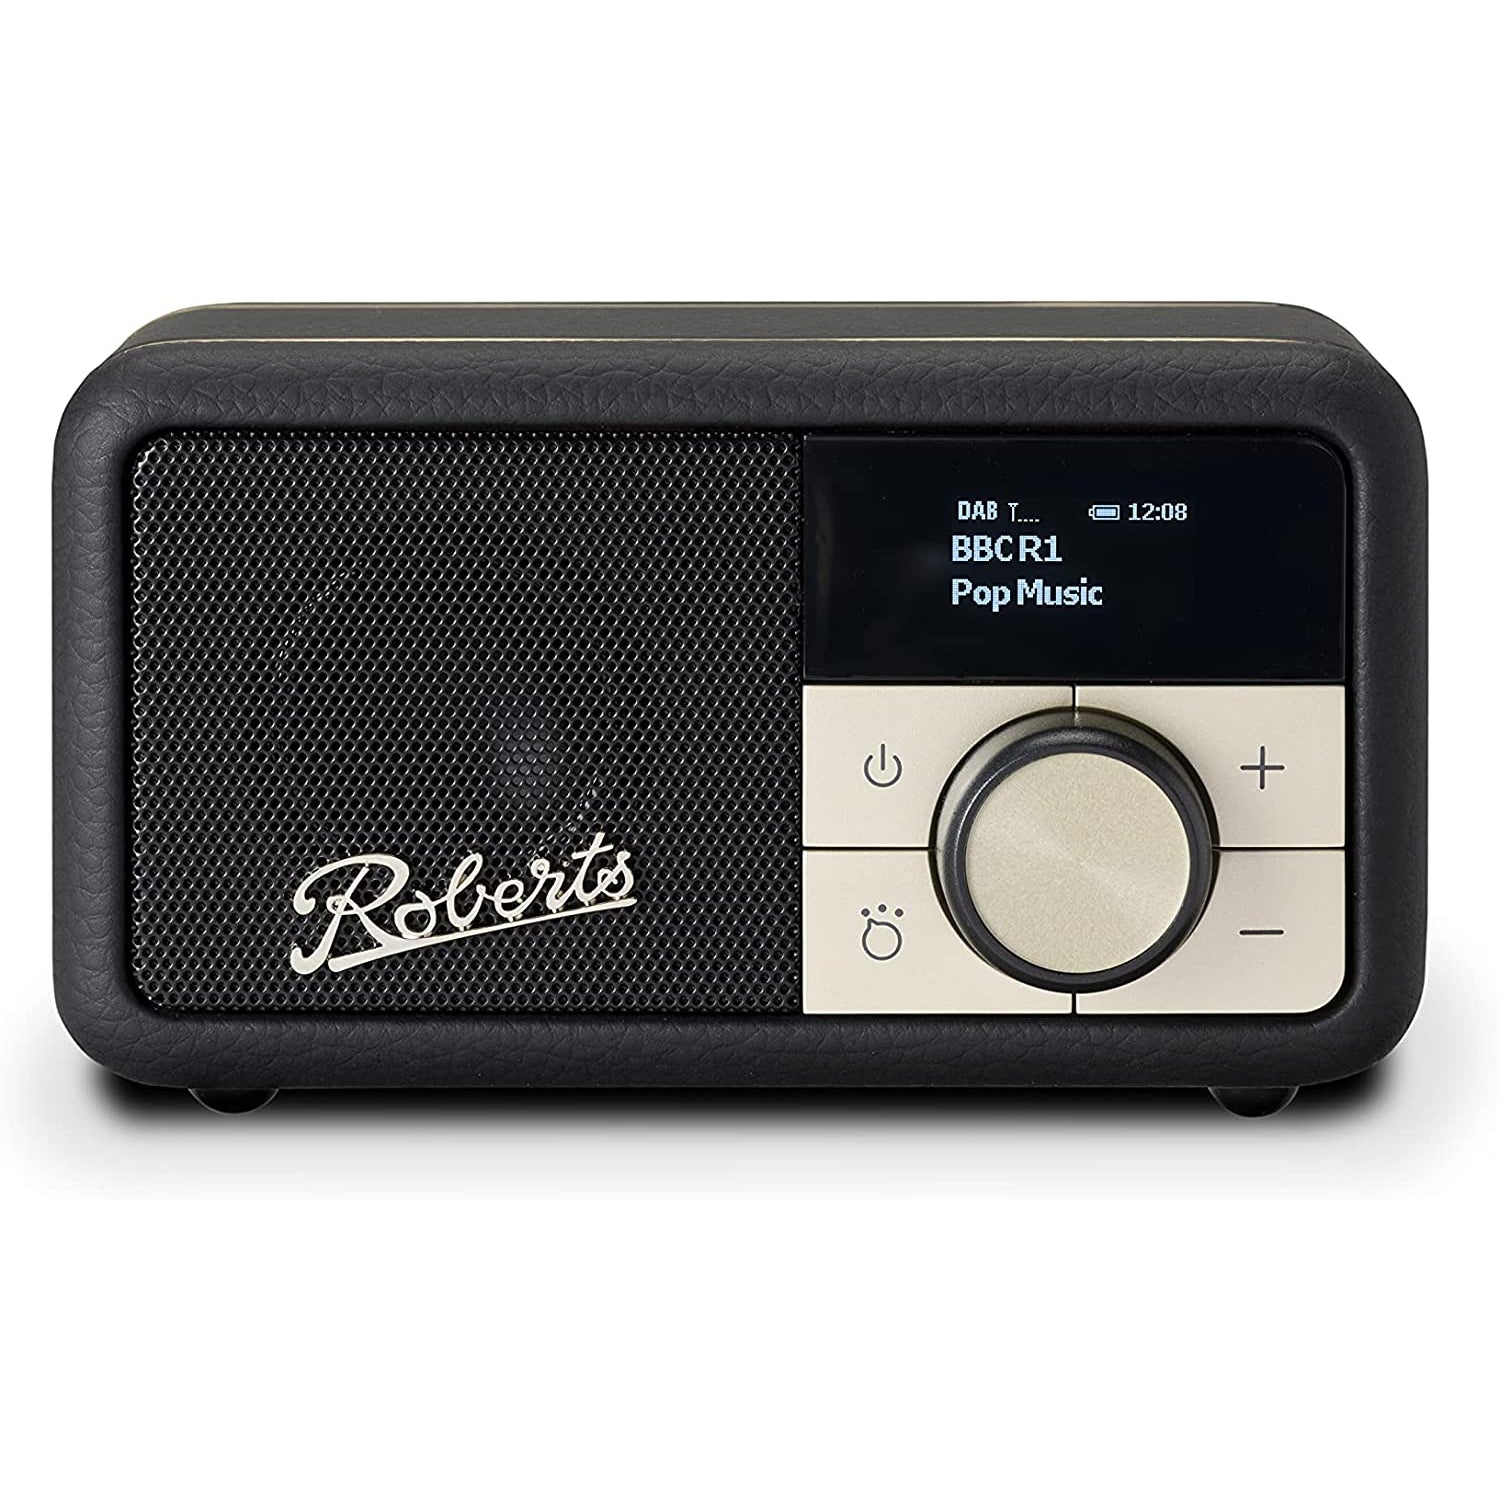 Roberts Revival Petite Digital Radio - Black